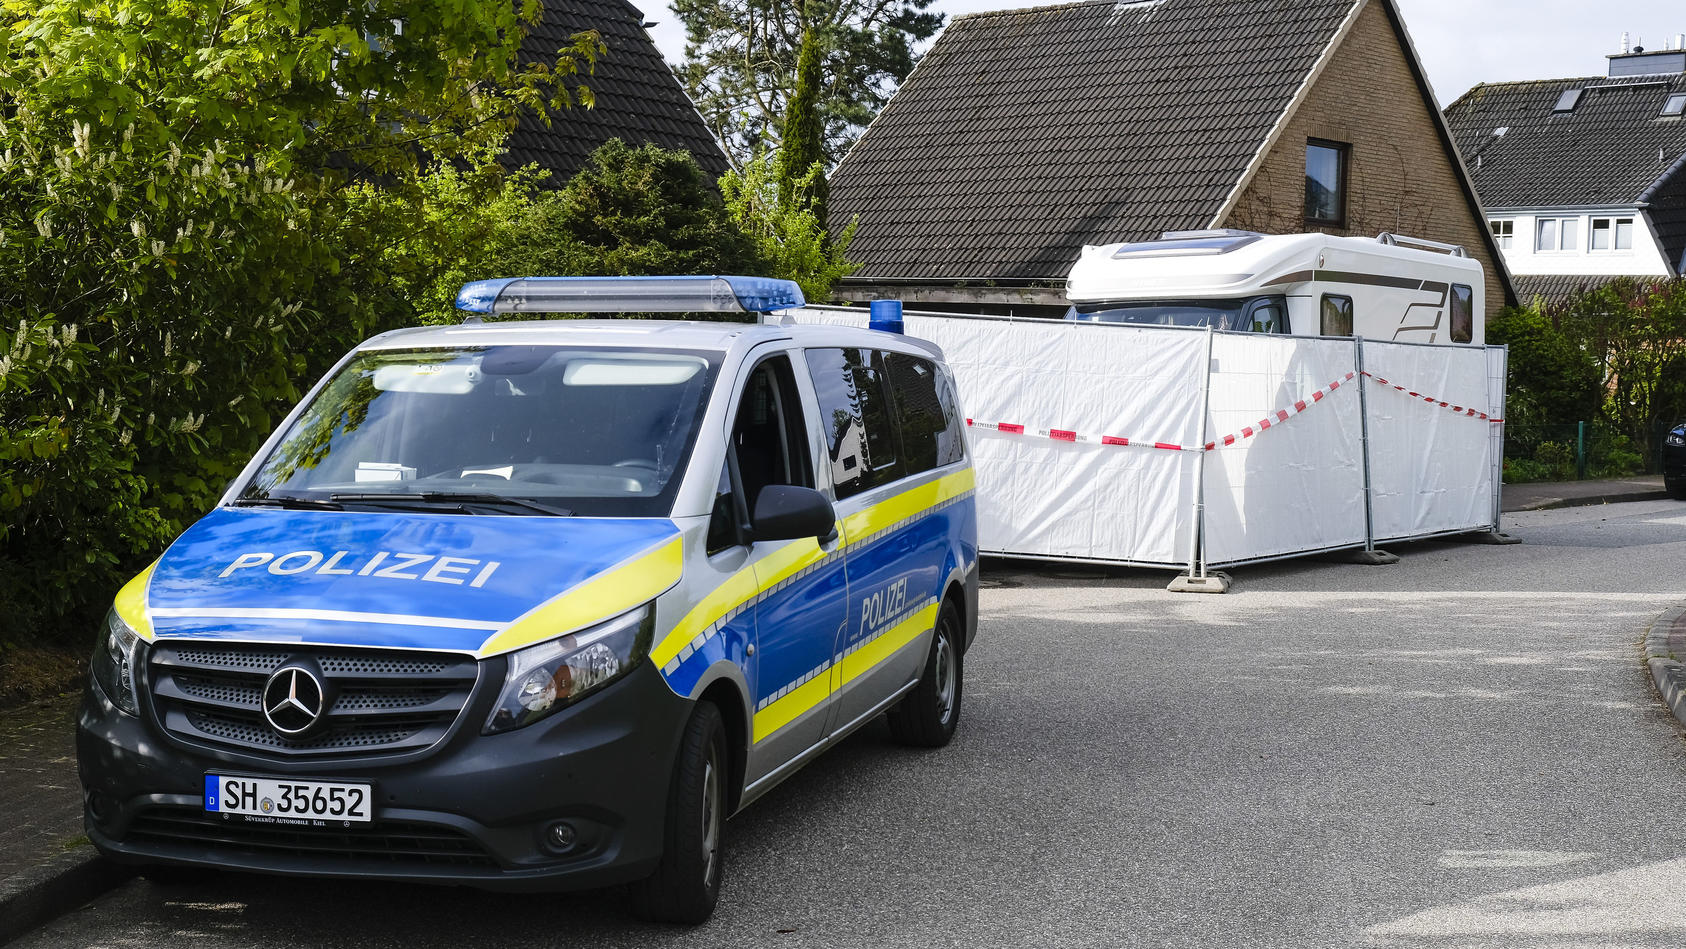 20.05.2021, Schleswig-Holstein, Dänischenhagen: Ein Streifenwagen der Polizei steht am Haus, in dem am 19.05.2021 zwei Tote gefunden wurden. In dem Ort bei Kiel sind in einer Doppelhaushälfte zwei Menschen getötet worden. Foto: Frank Molter/dpa +++ d